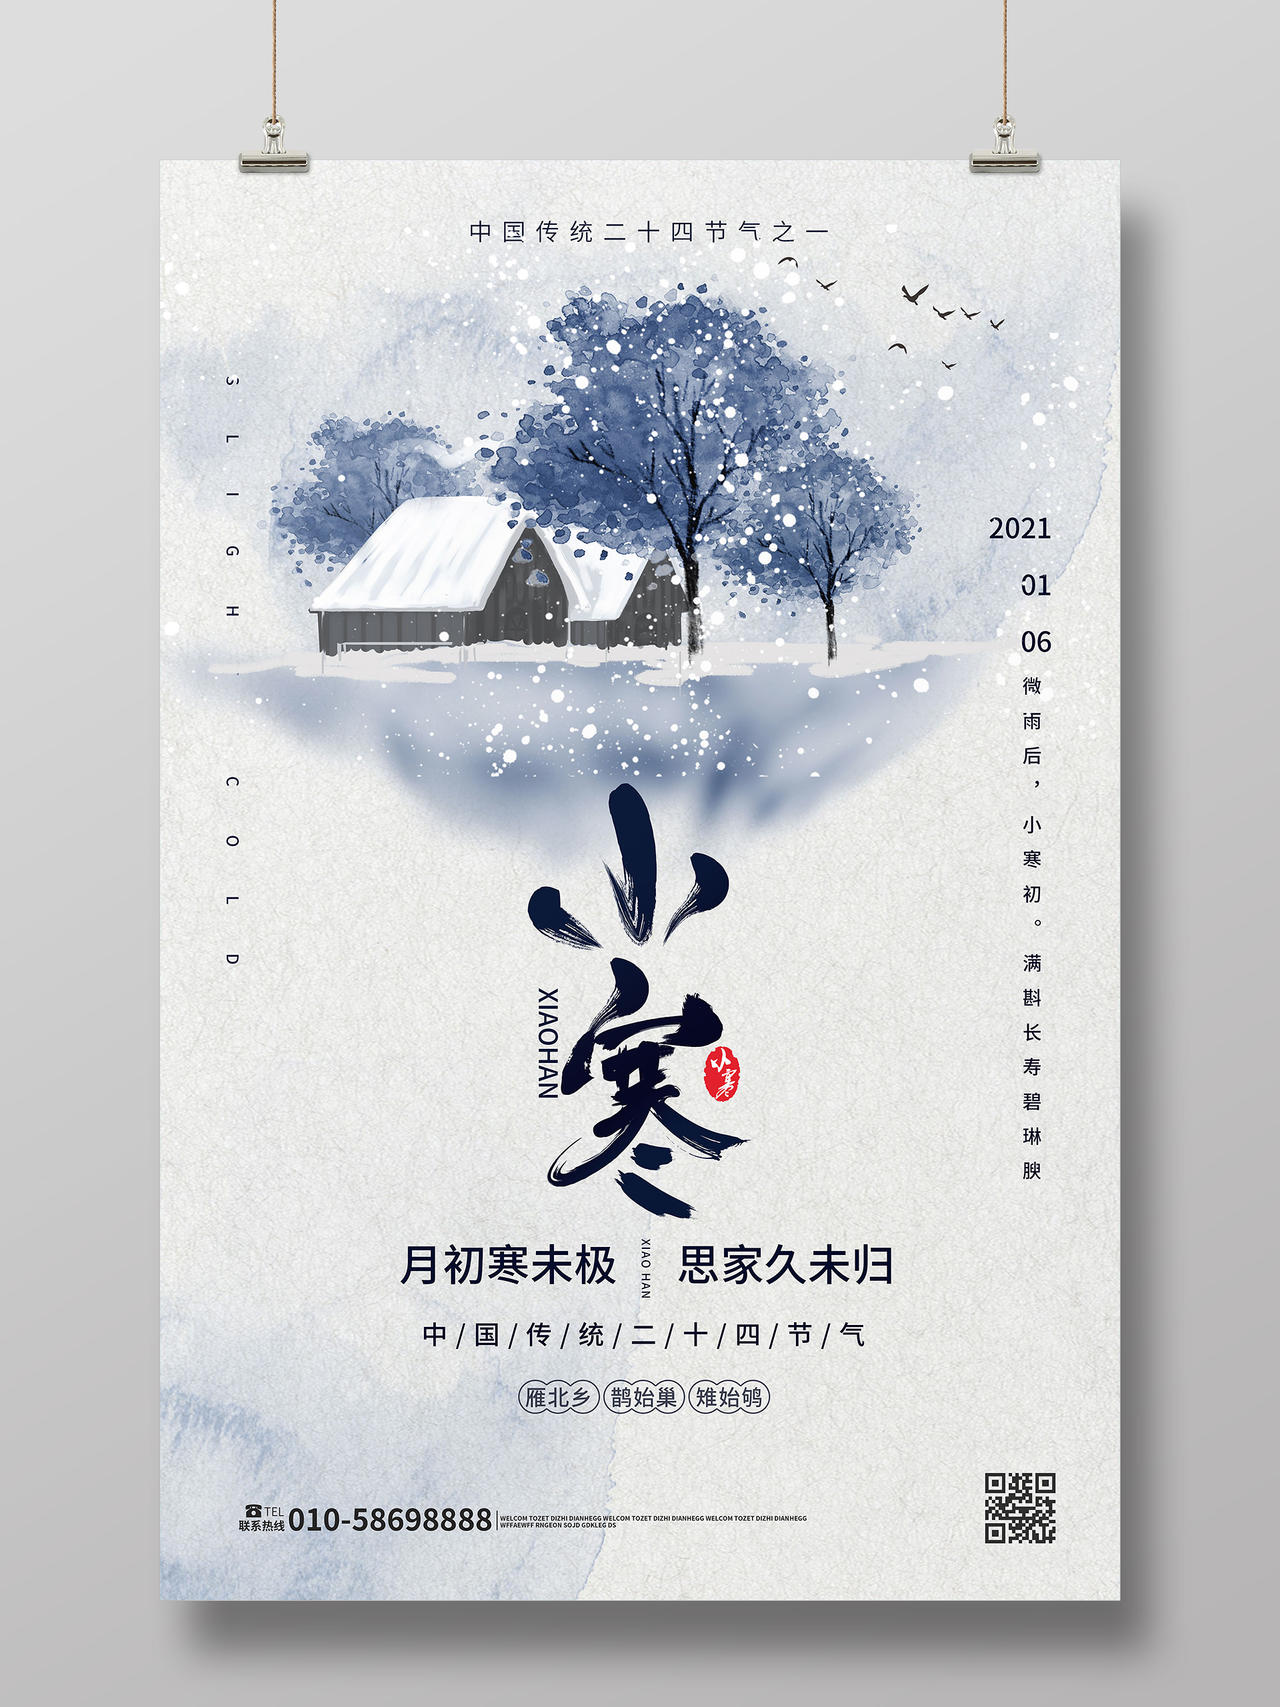 浅蓝色水墨风格中国二十四节气小寒海报设计24二十四节气小寒